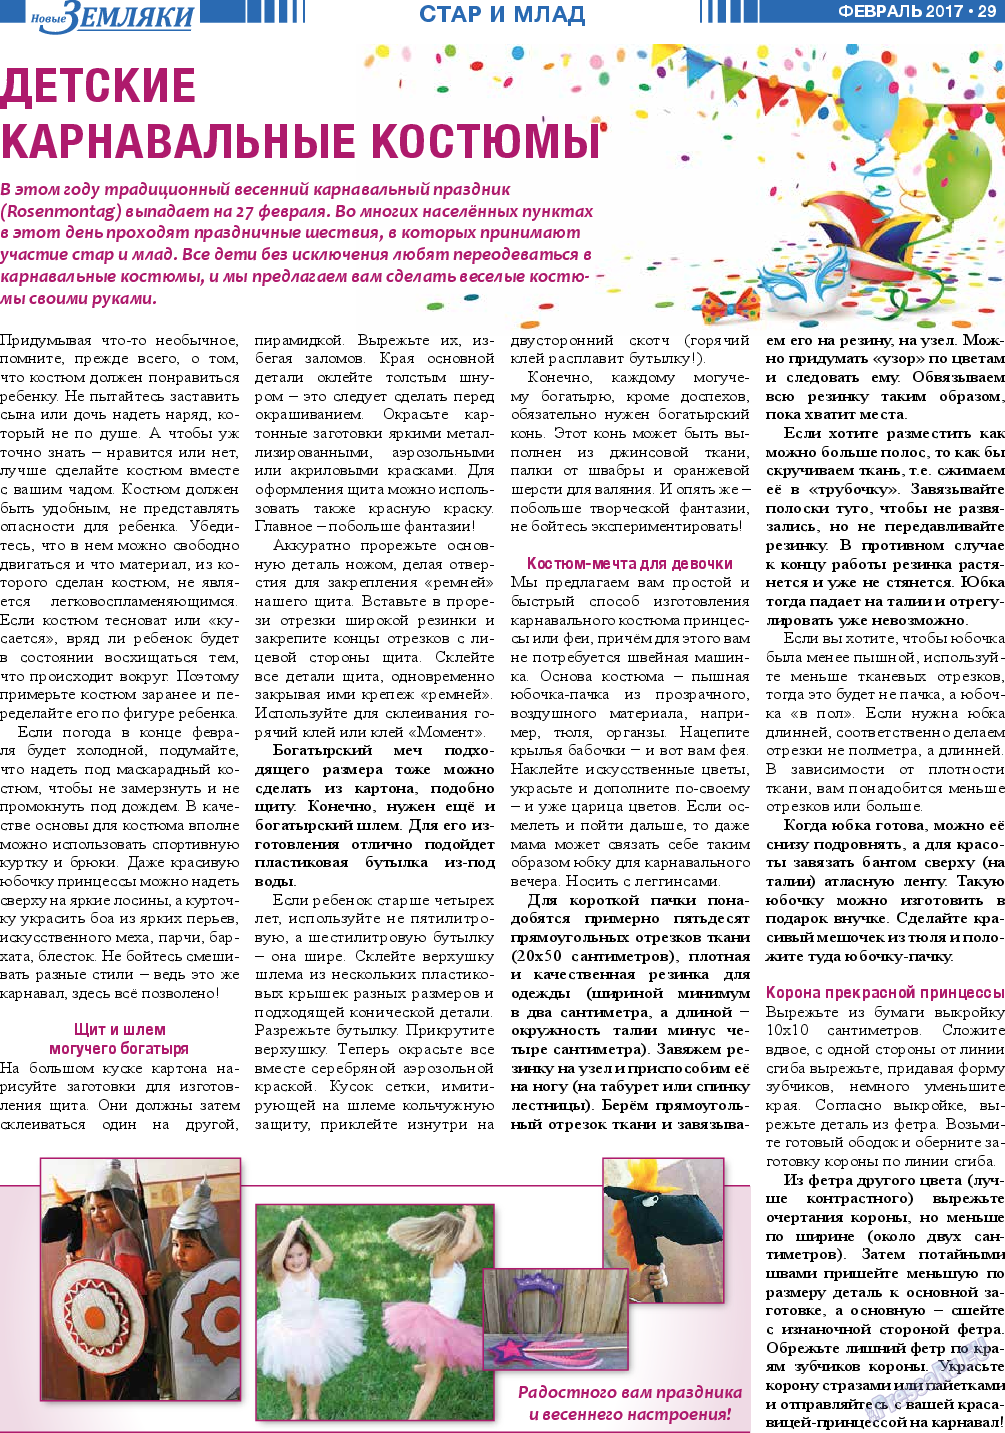 Новые Земляки, газета. 2017 №2 стр.29